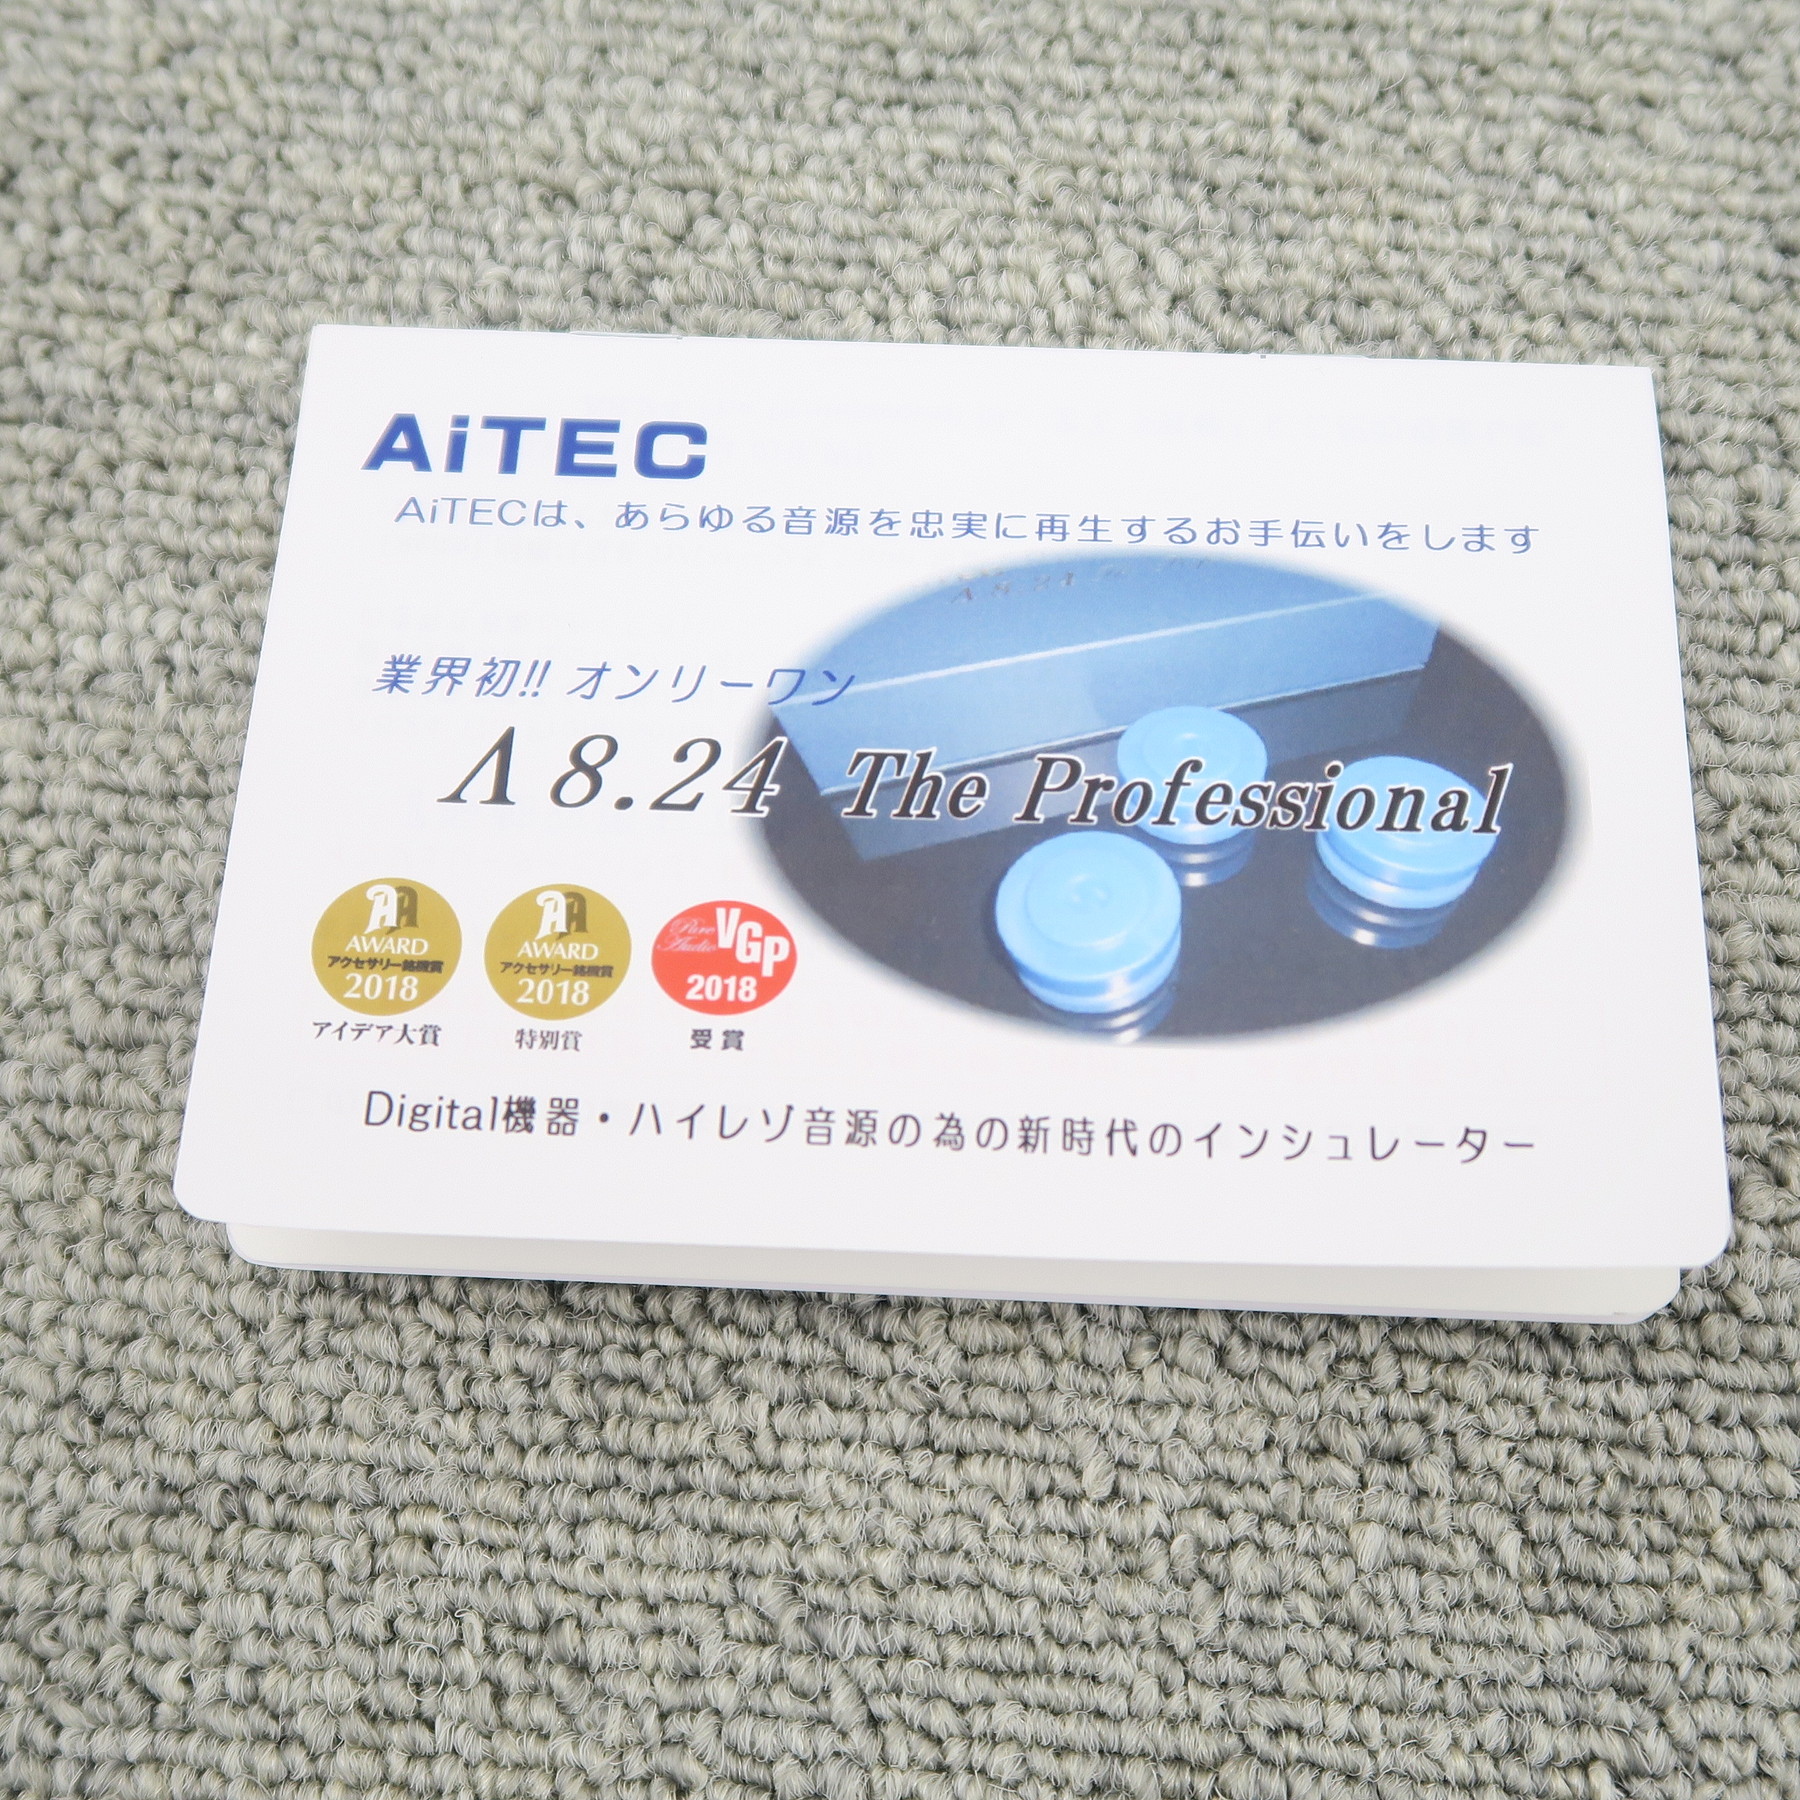 Sランク】アイテック AiTEC Λ8.24 The Professional インシュレーター